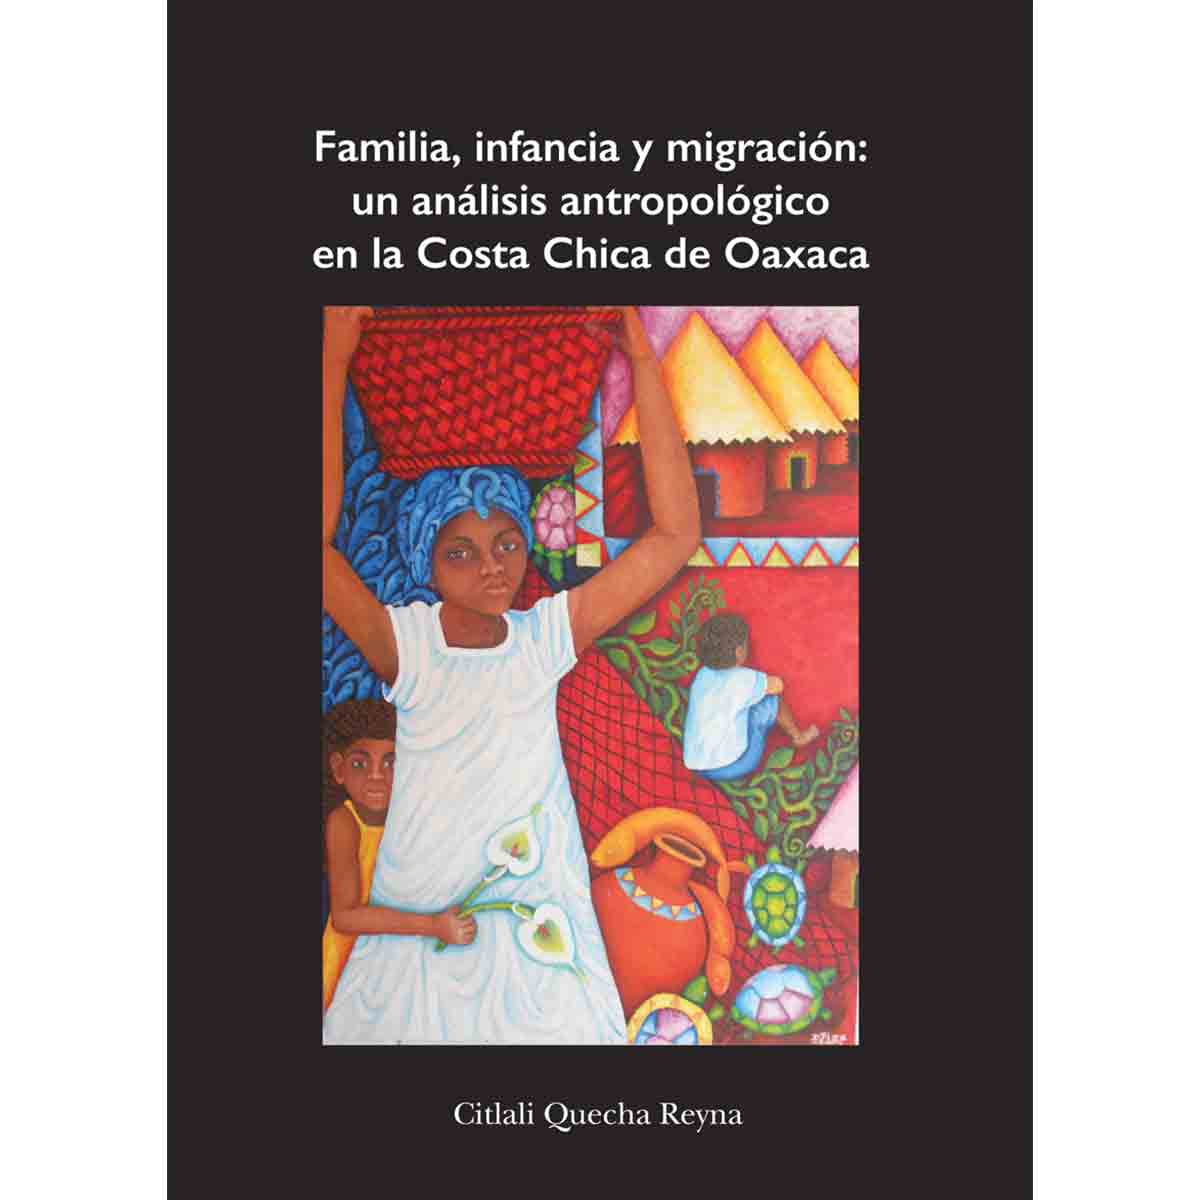 FAMILIA, INFANCIA Y MIGRACIÓN: UN ANÁLISIS ANTROPOLÓGICO EN LA COSTA CHICA DE OAXACA